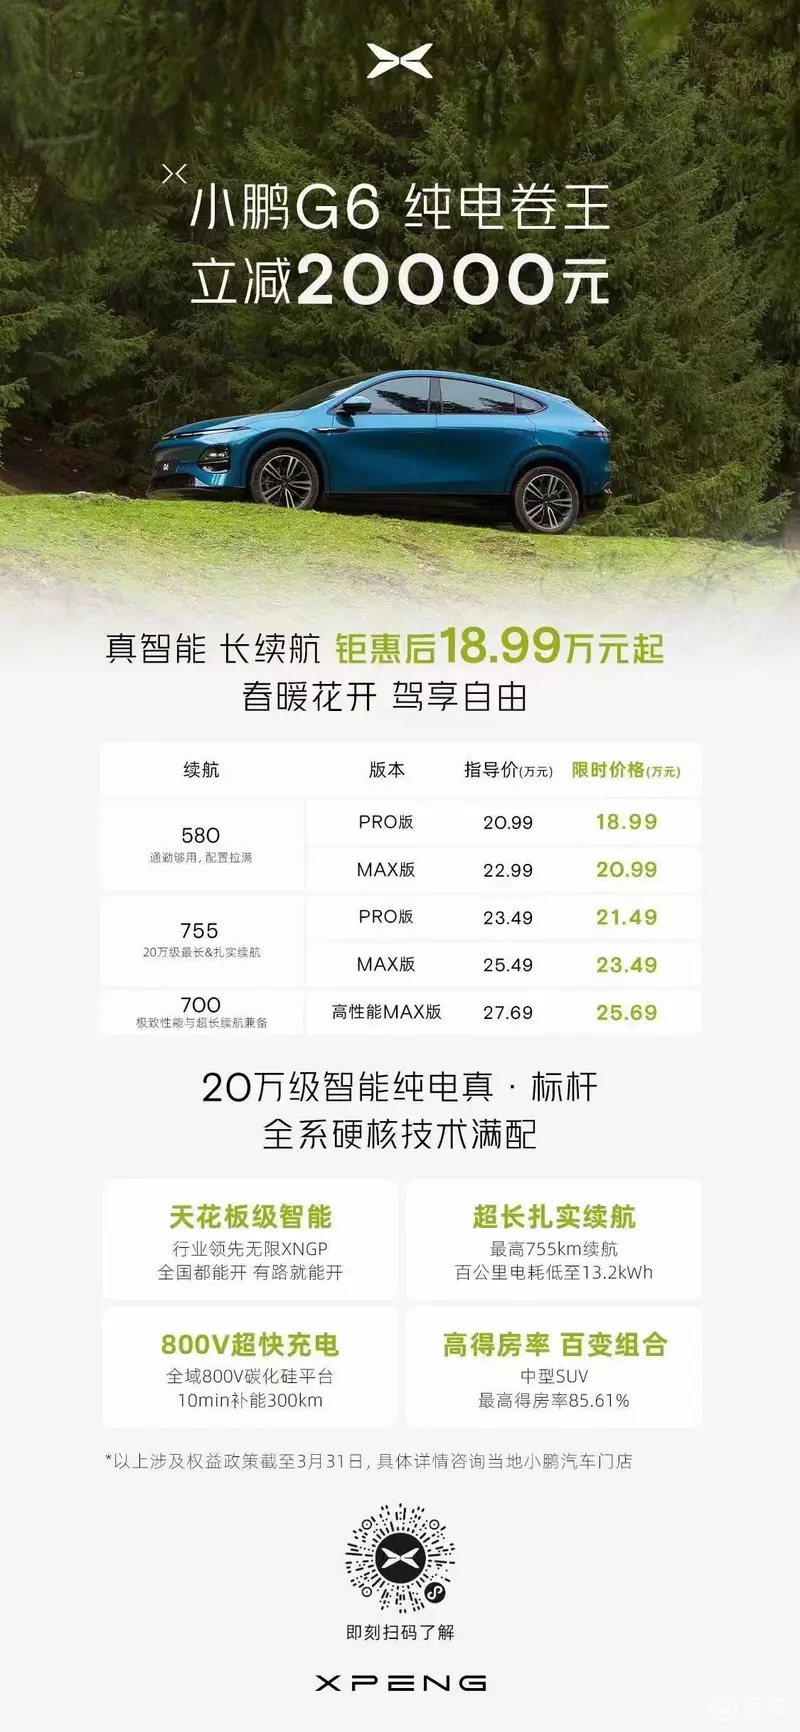 小鹏汽车推出限时福利 置换最高补1.5万元/付费外观车色5折插图3